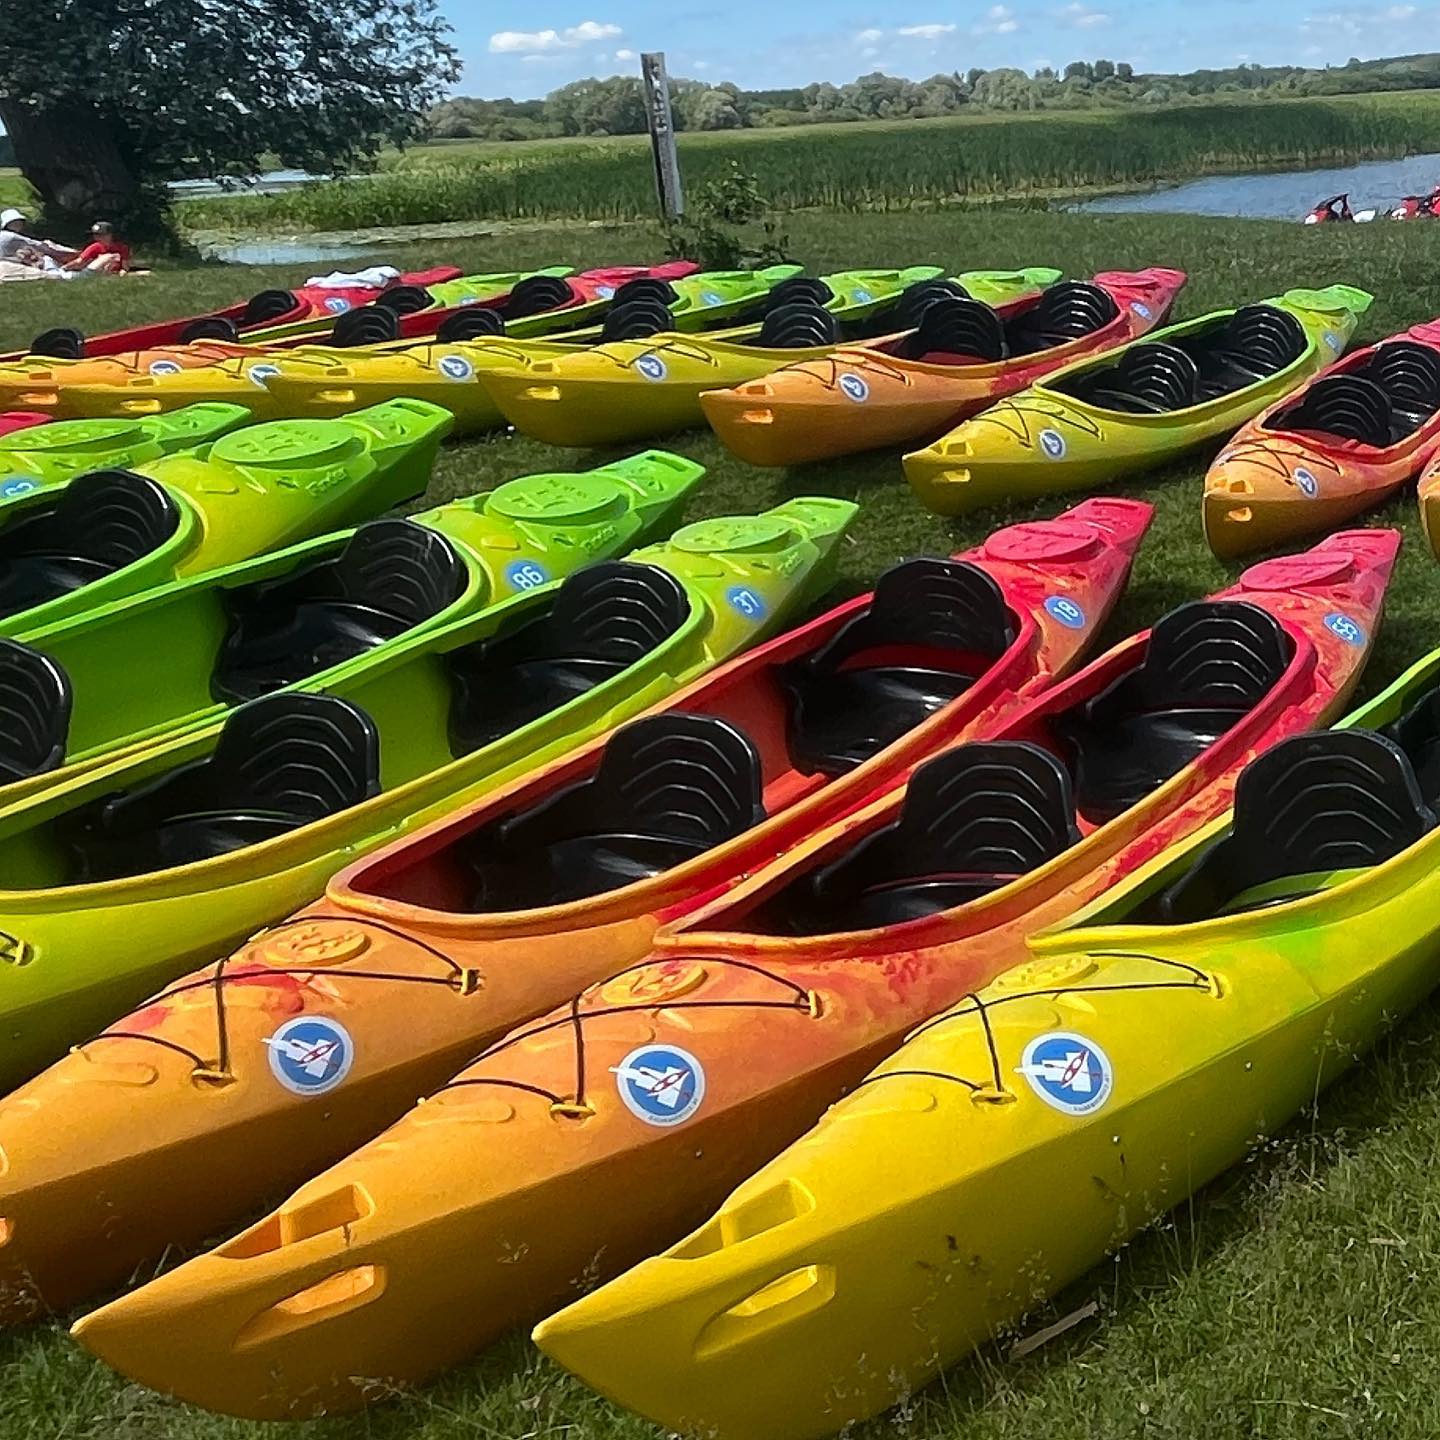 Bezpłatne spływy! 😎  Mamy dla Was razem z @dzielnica_wisla_  świetną wiadomość ☀️😁⚓️🛶🔥😎👌  Już jutro ruszają bezpłatne spływy kajakowe po Wiśle na Waszych ulubionych trasach :)  I coś jeszcze 😁👌  Szczegóły na:  Kajakwstolicy.pl/splywy-wakacyjne  #kajaki #warszawa #kayak #warsaw #dzielnicawisla #splywykajakowe #kayaking #kayakingadventures #cowwarszawie